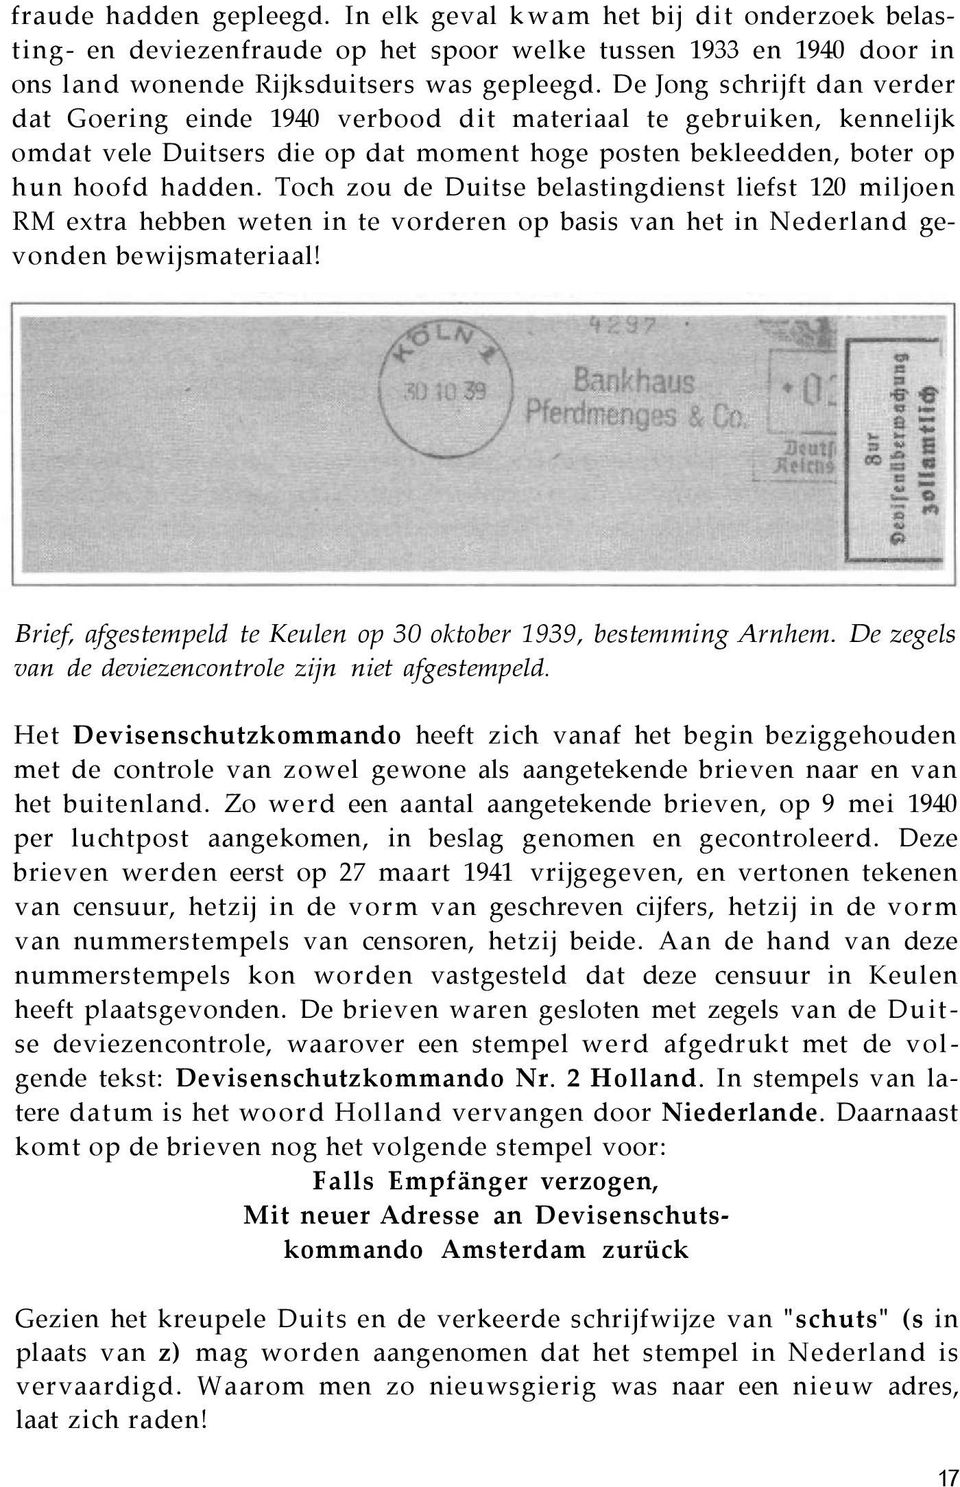 Toch zou de Duitse belastingdienst liefst 120 miljoen RM extra hebben weten in te vorderen op basis van het in Nederland gevonden bewijsmateriaal!